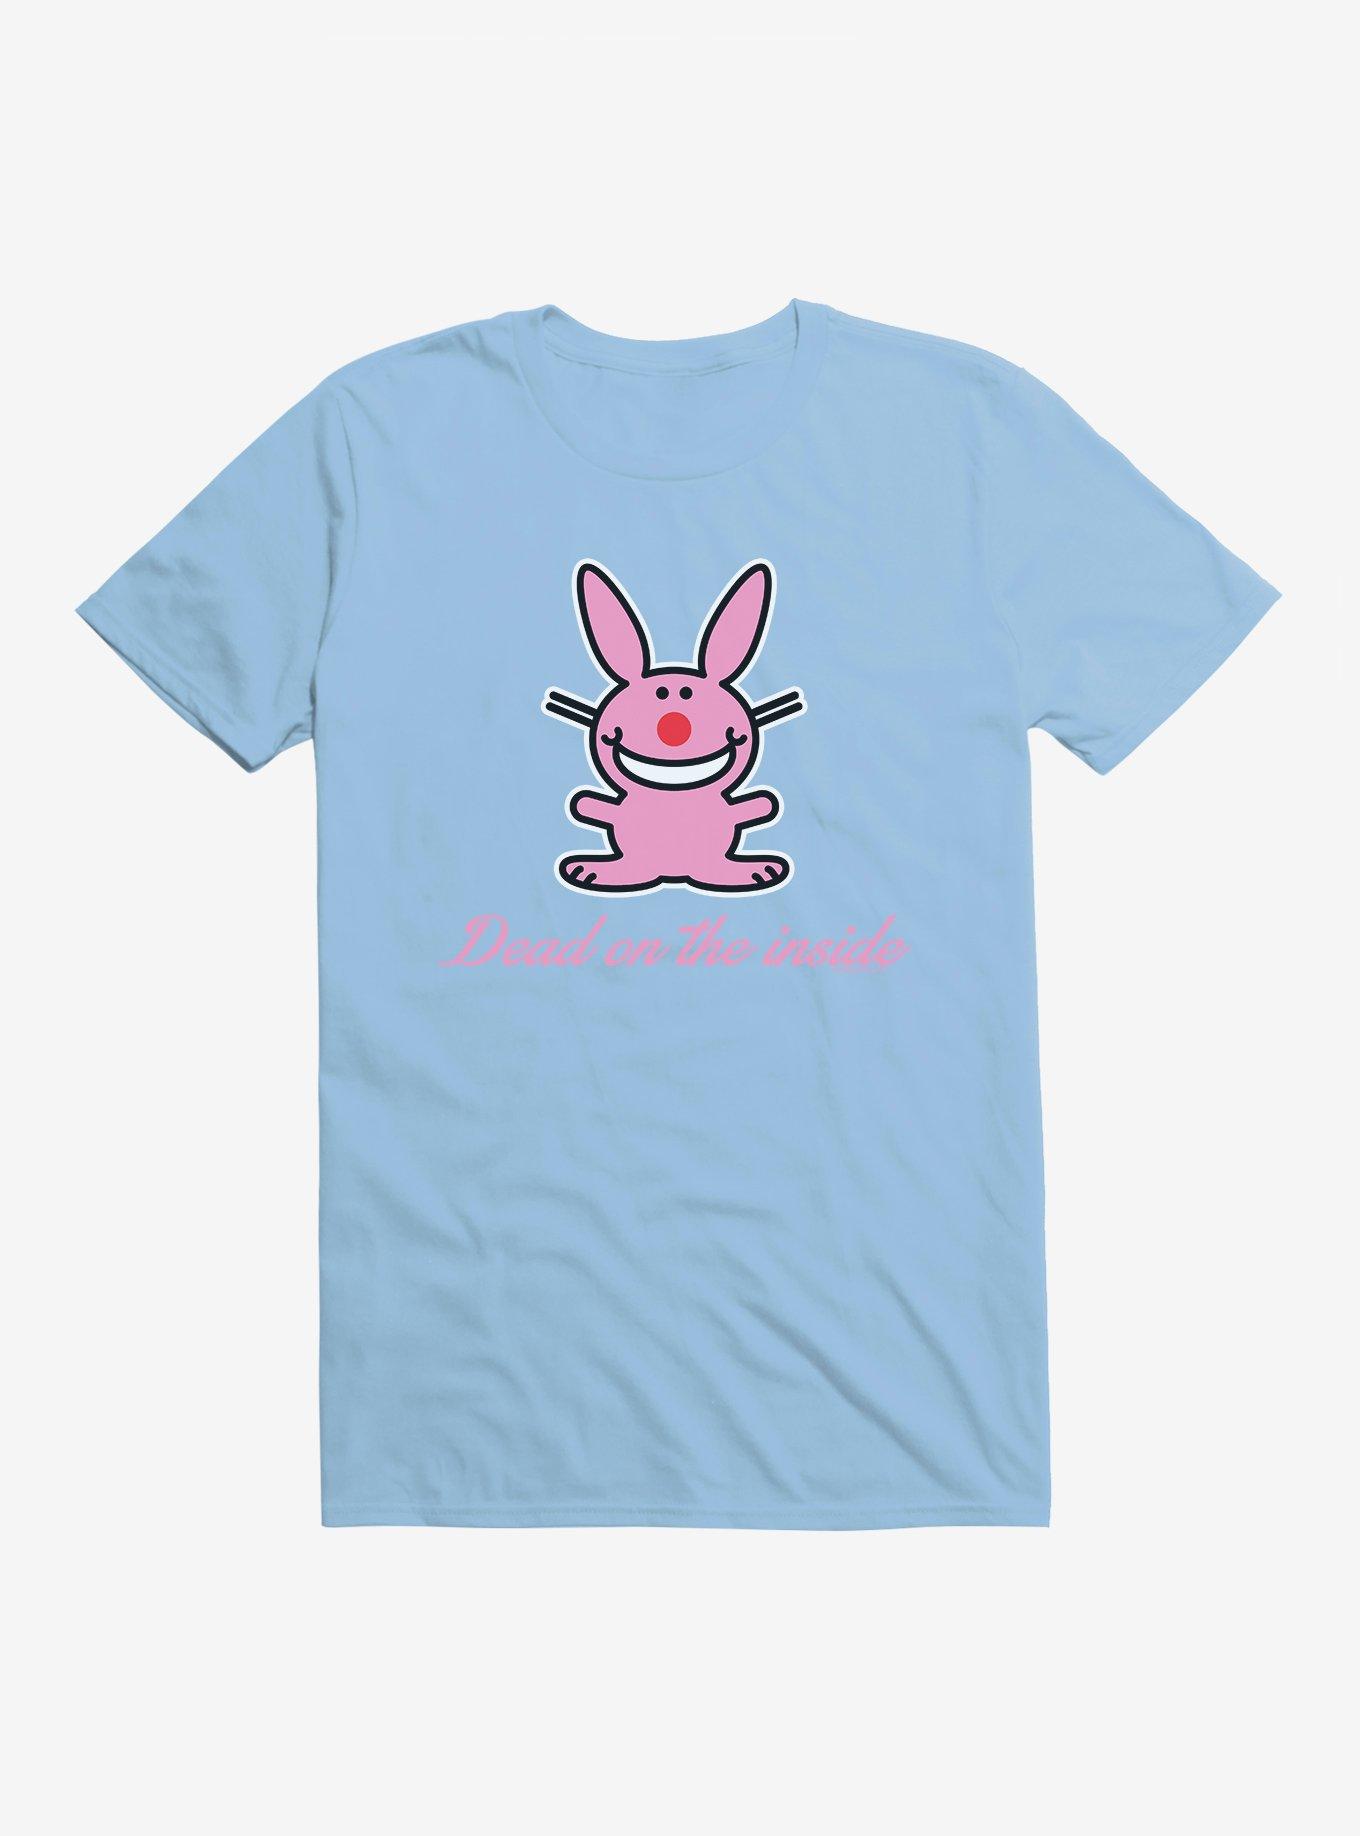 It's Happy Bunny Dead Inside T-Shirt